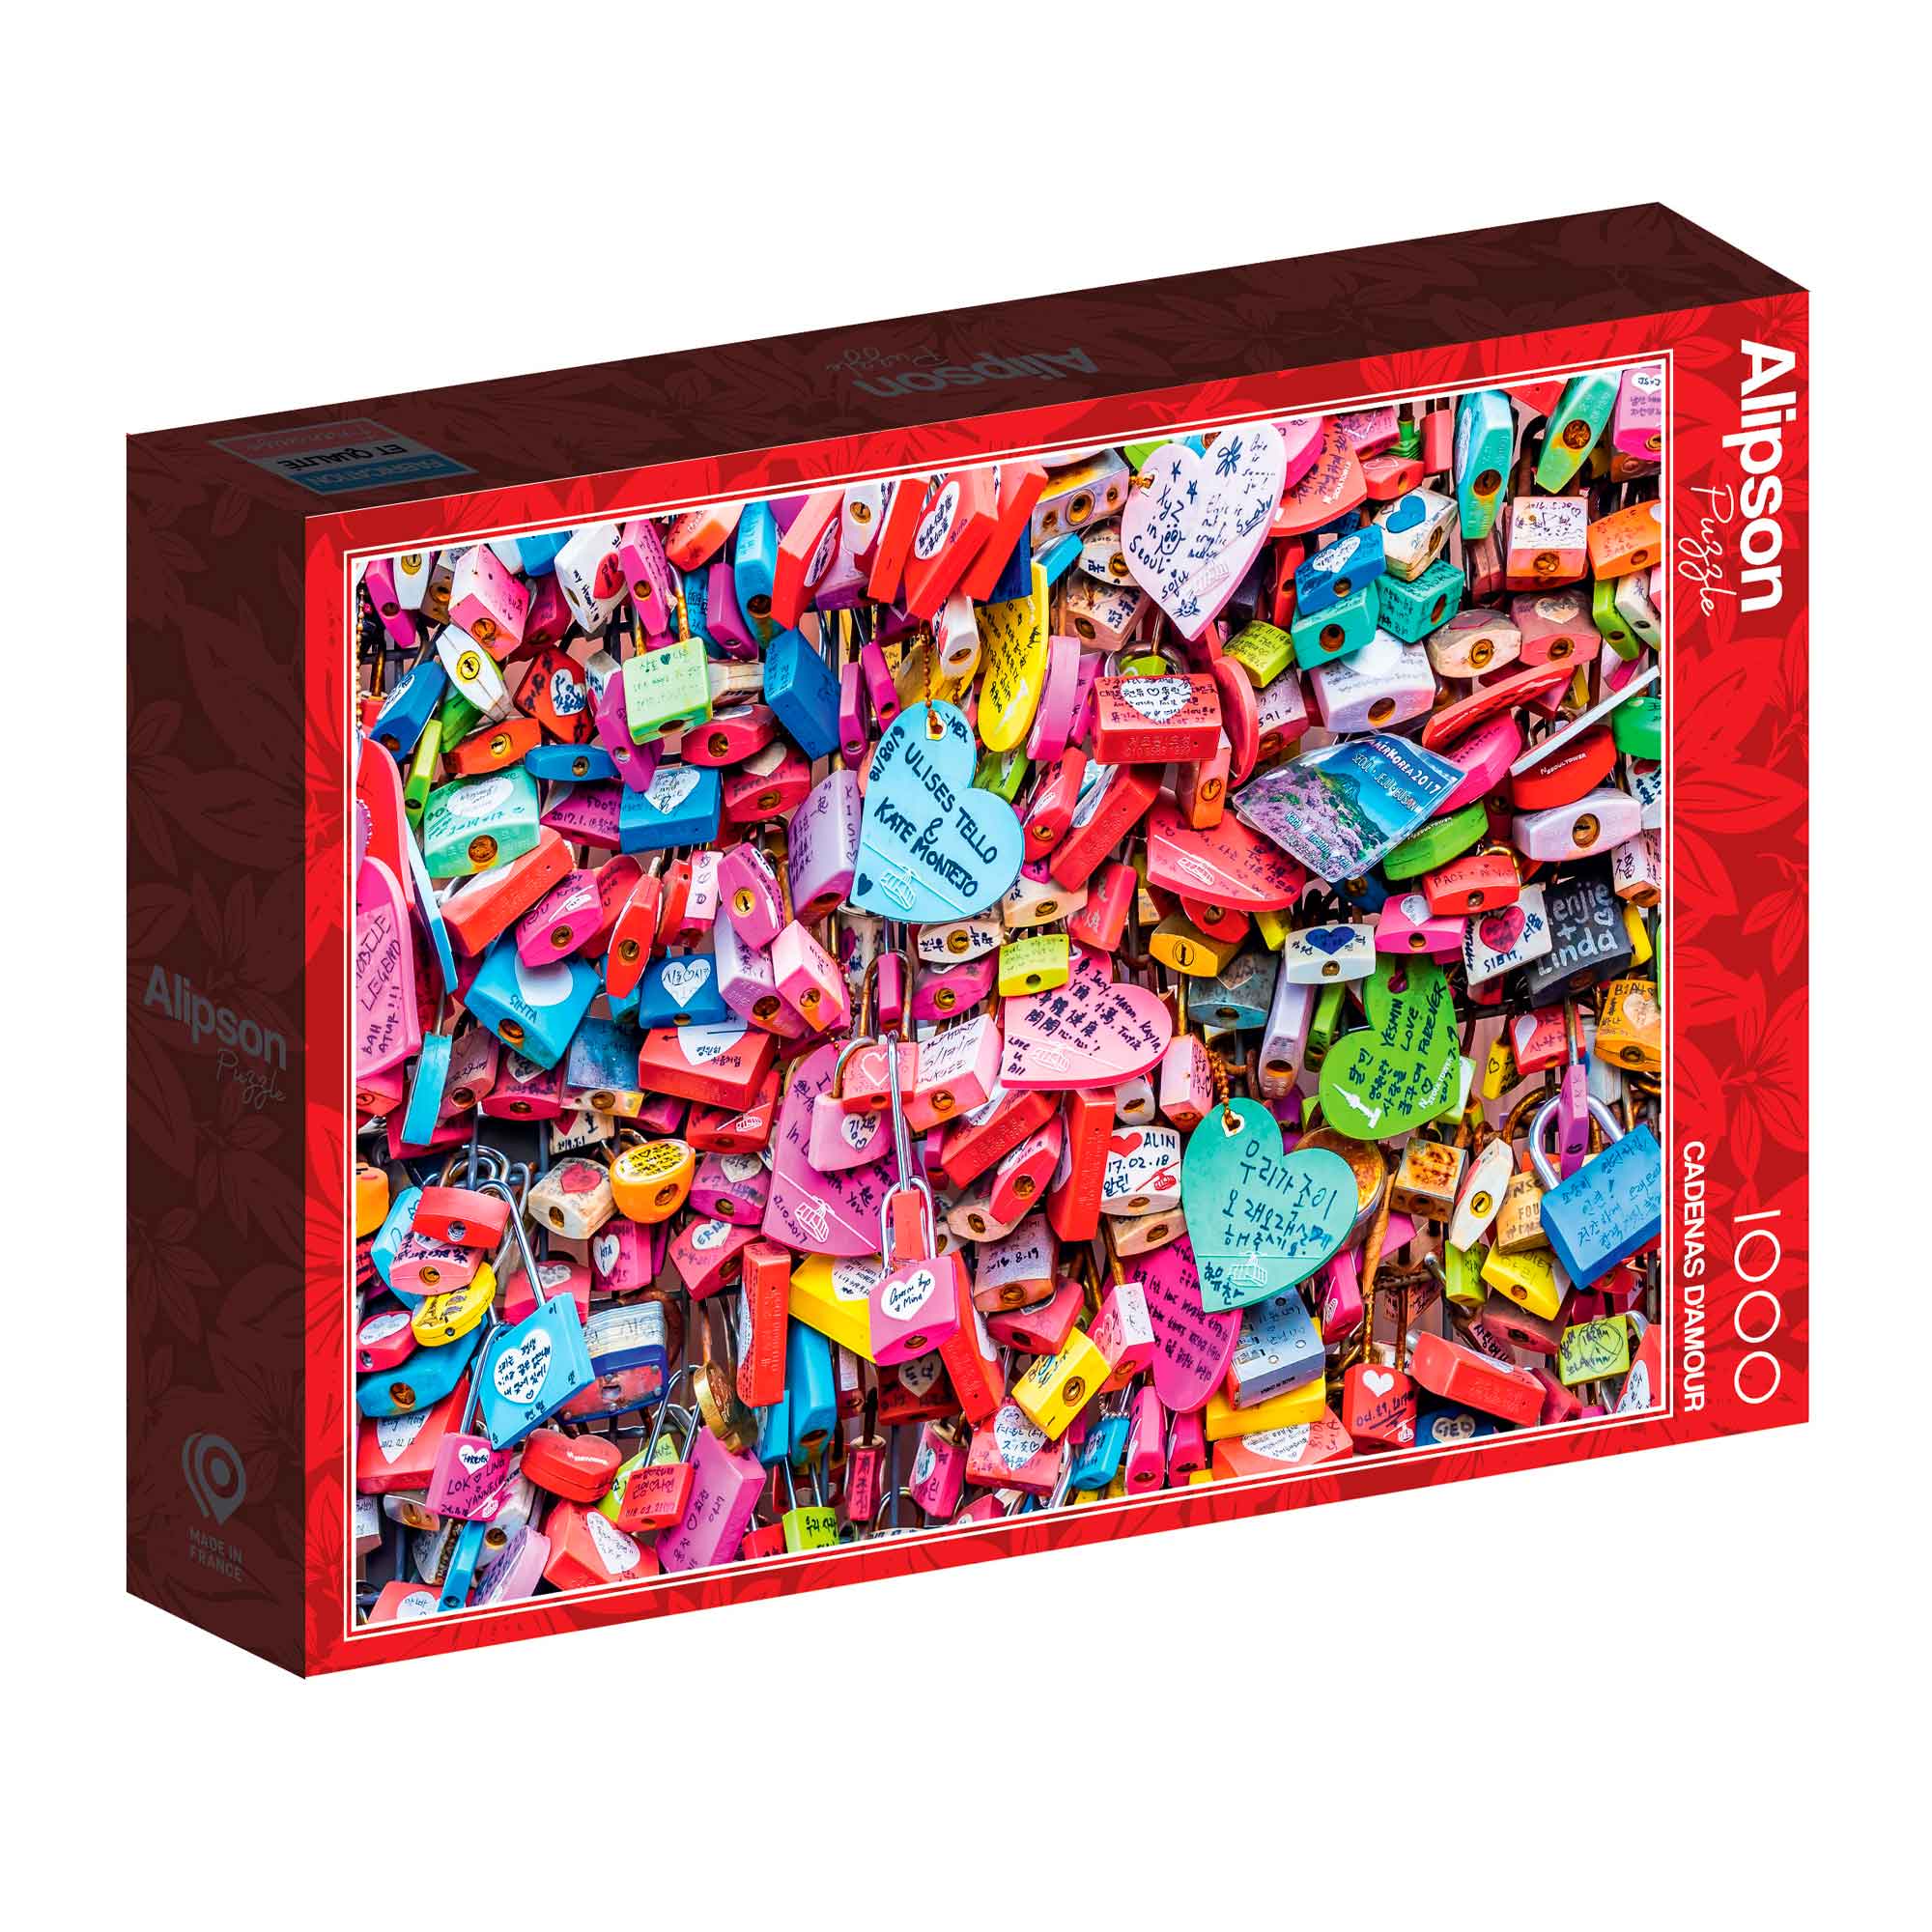 Comprar Puzzle Alipson Amsterdam de 1000 piezas